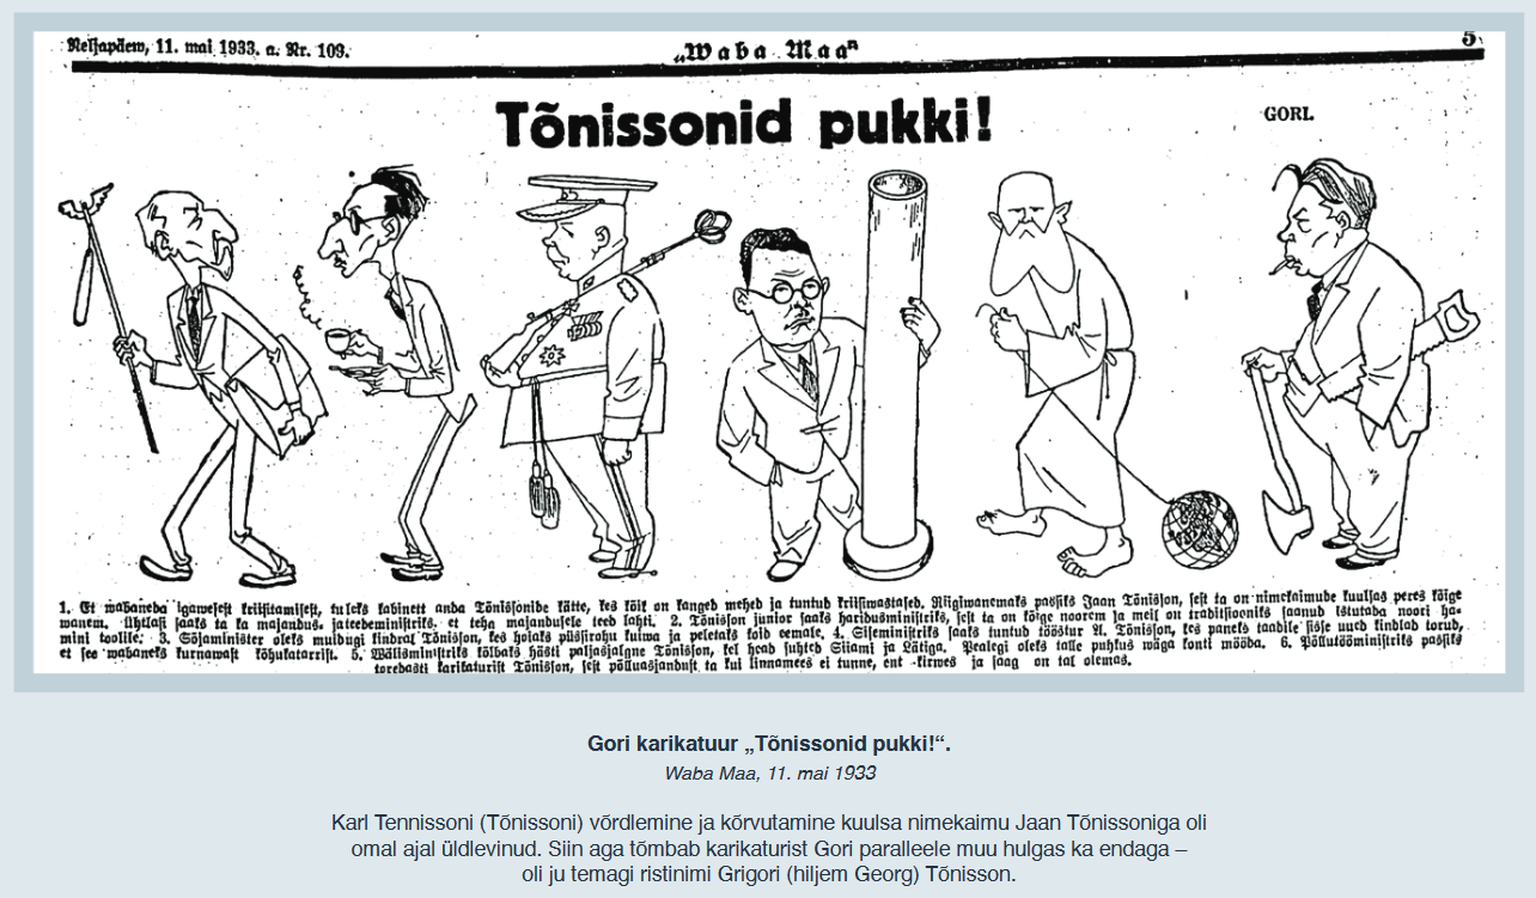 Gori karikatuur «Tõnissonid pukki!» (Waba Maa, 11. mai 1933). Karl Tennissoni (Tõnissoni) võrdlemine ja kõrvutamine kuulsa nimekaimu Jaan Tõnissoniga oli omal ajal üldlevinud. Siinsel pilapildil kujutatud Tõnissonide hulgas tõmbab karikaturist Gori paralleeli ka endaga – oli ju temagi ristinimi Grigori (hiljem Georg) Tõnisson.